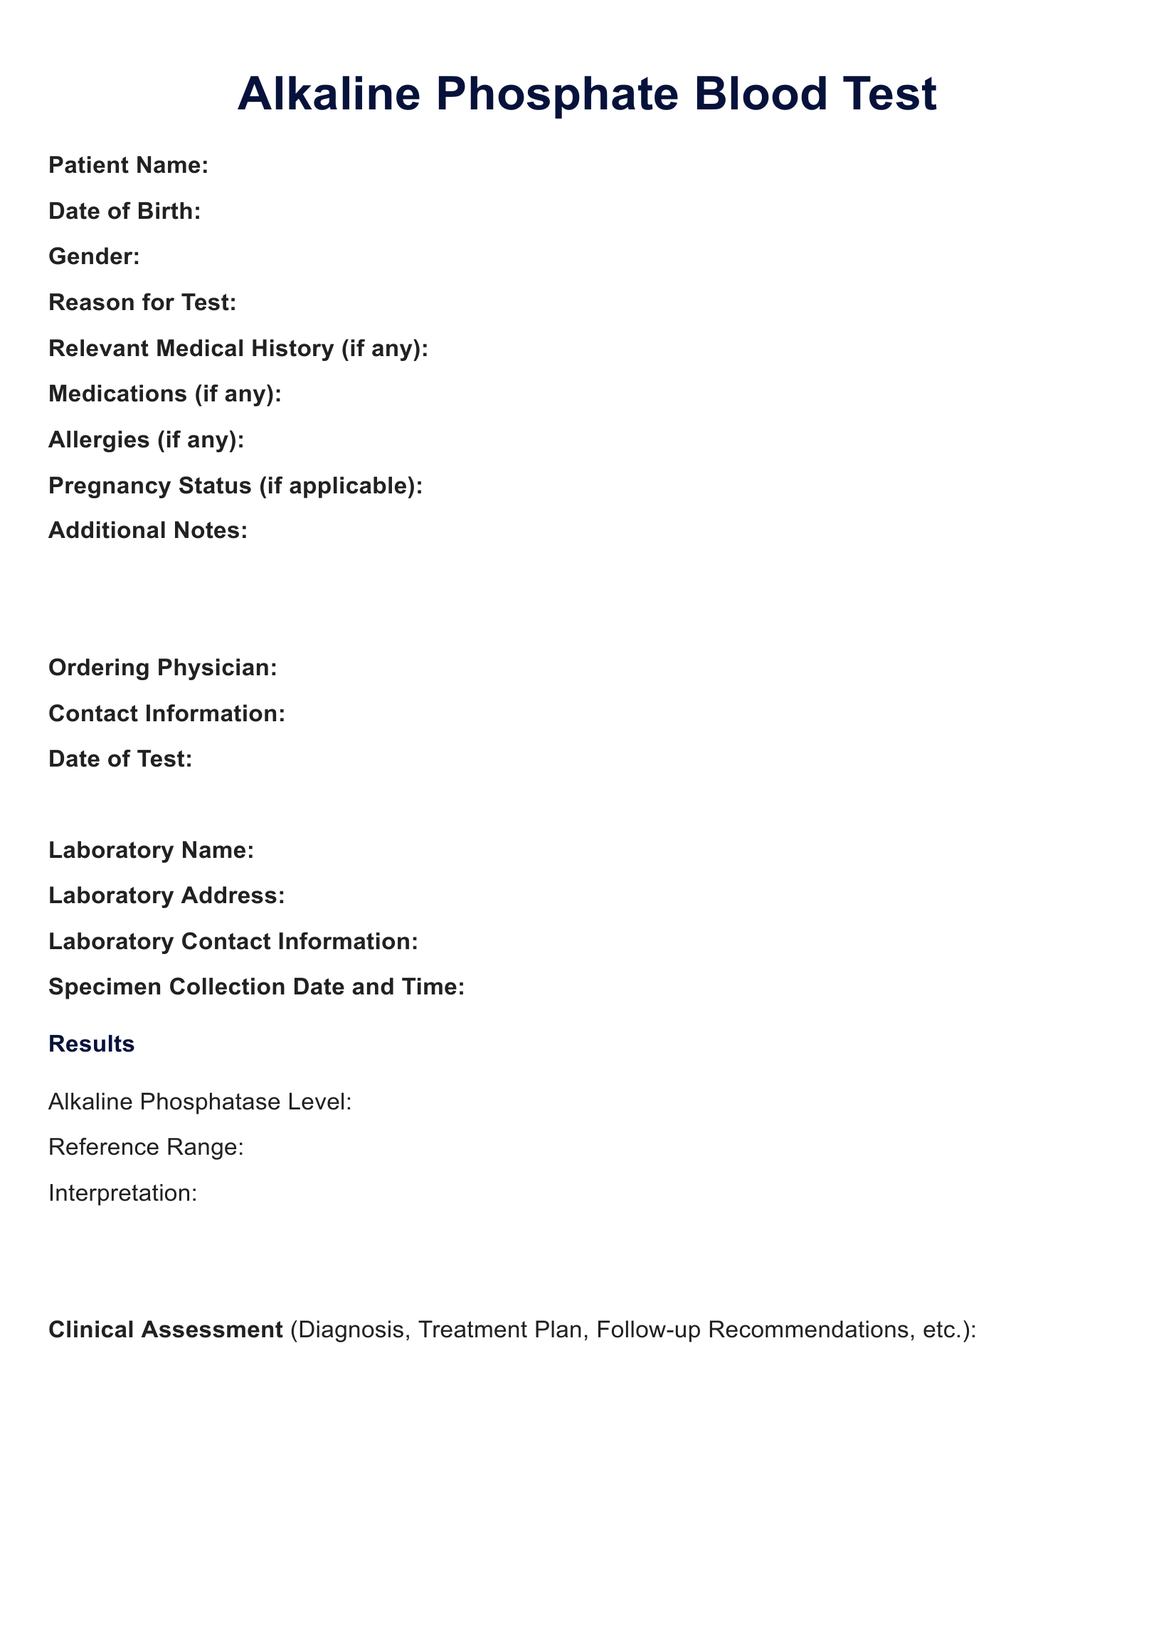 ALK Phos Blood Test PDF Example